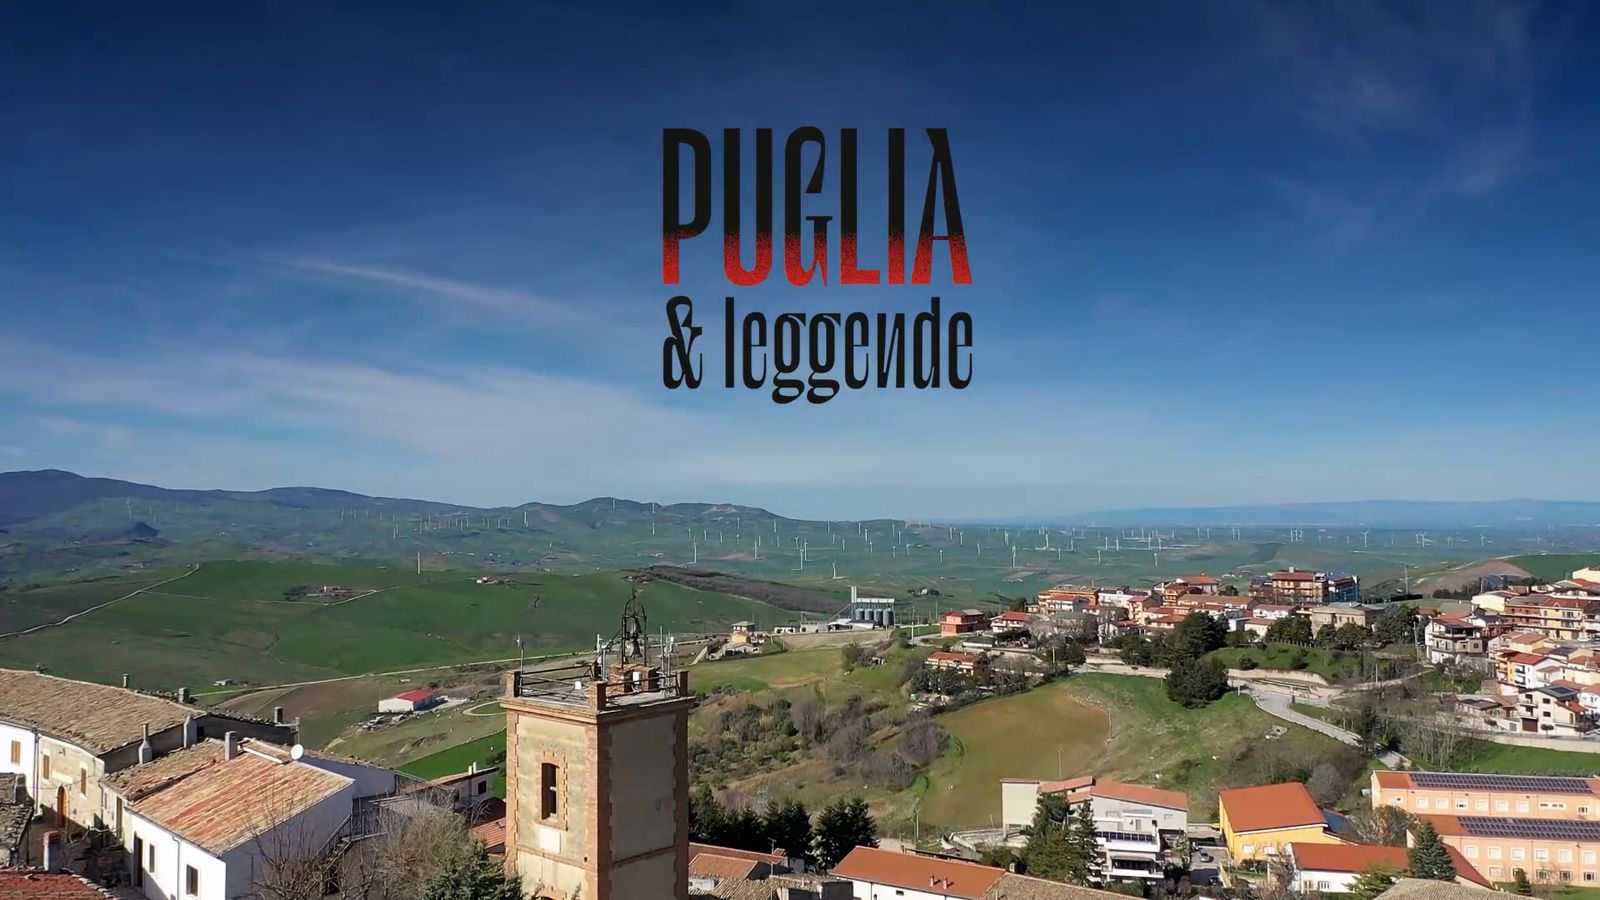 Galleria Da mercoledì 26 aprile al via la webserie “Puglia & Leggende”. Un viaggio alla scoperta di luoghi e storie - Diapositiva 1 di 6